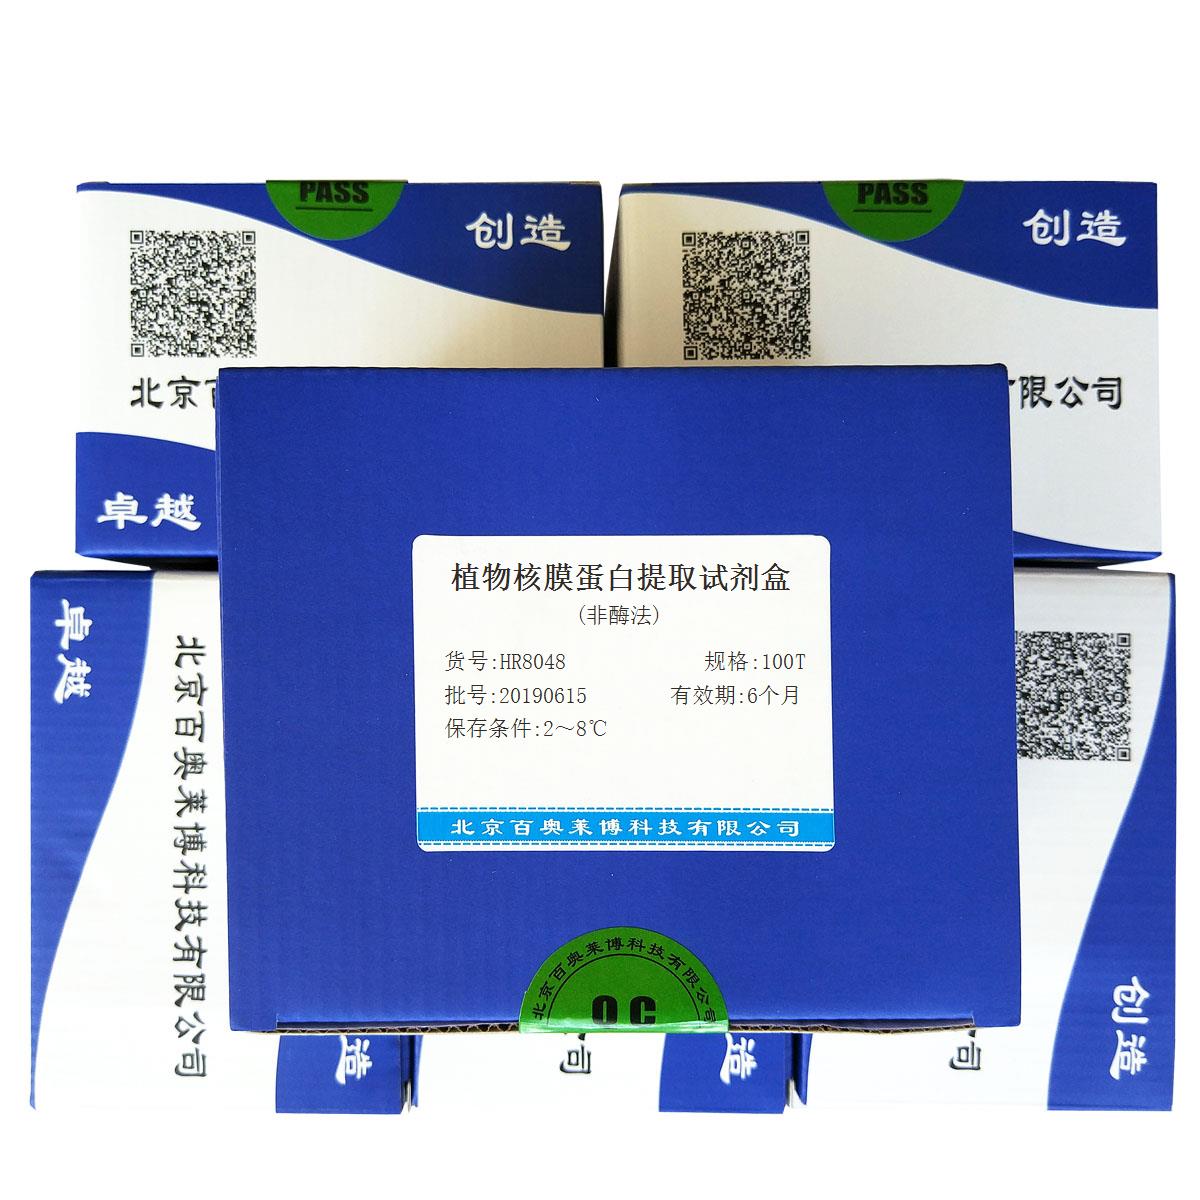 植物核膜蛋白提取试剂盒(非酶法)北京厂家